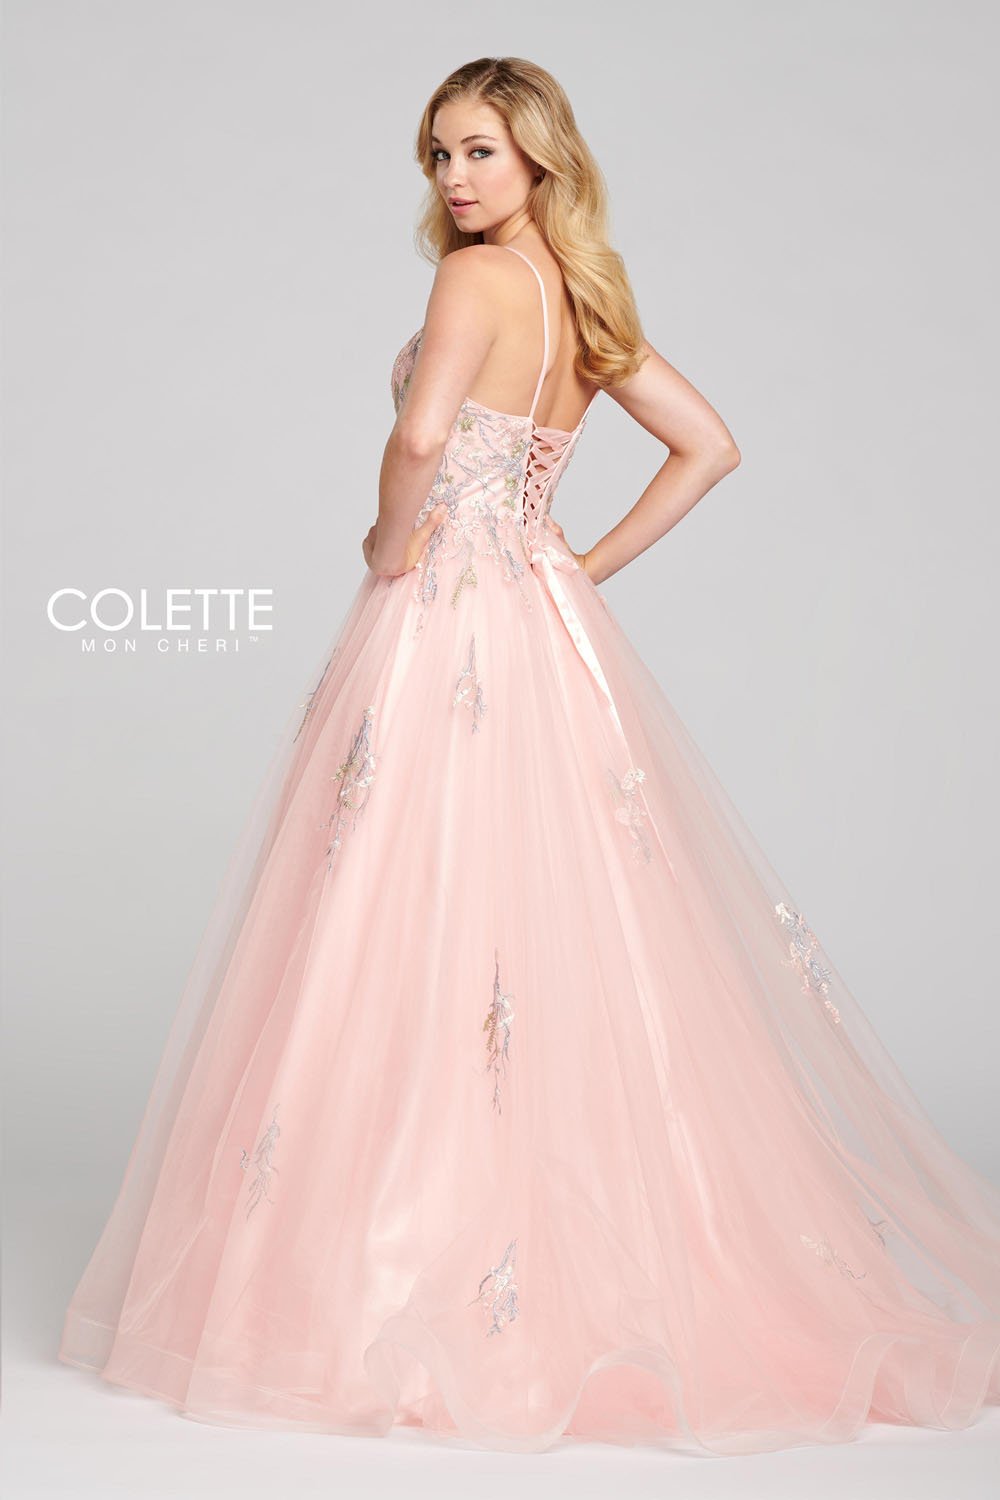 Colette CL12138 Dresses